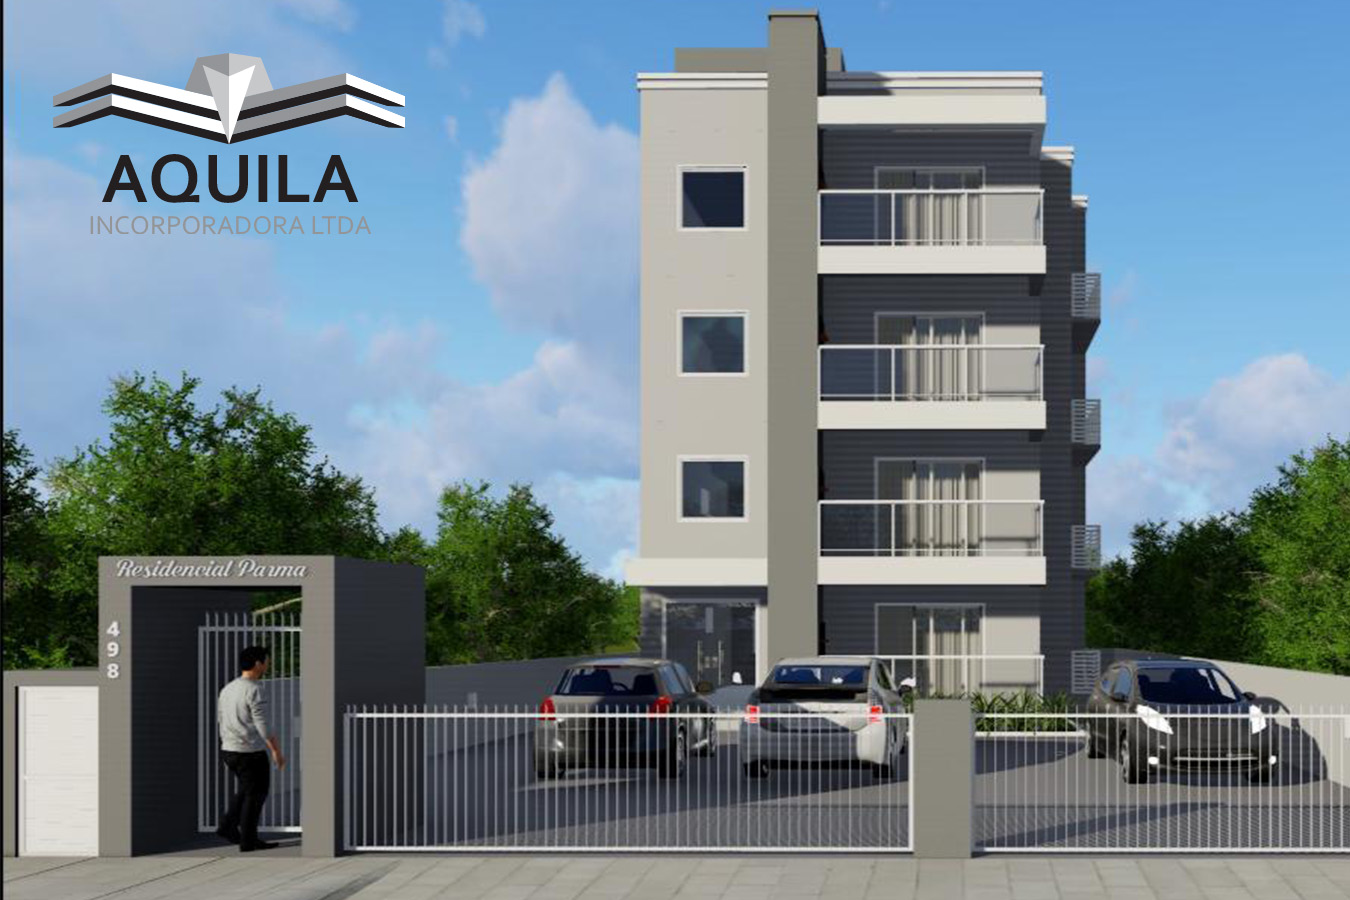 Aquila 4 : Residencial Parma